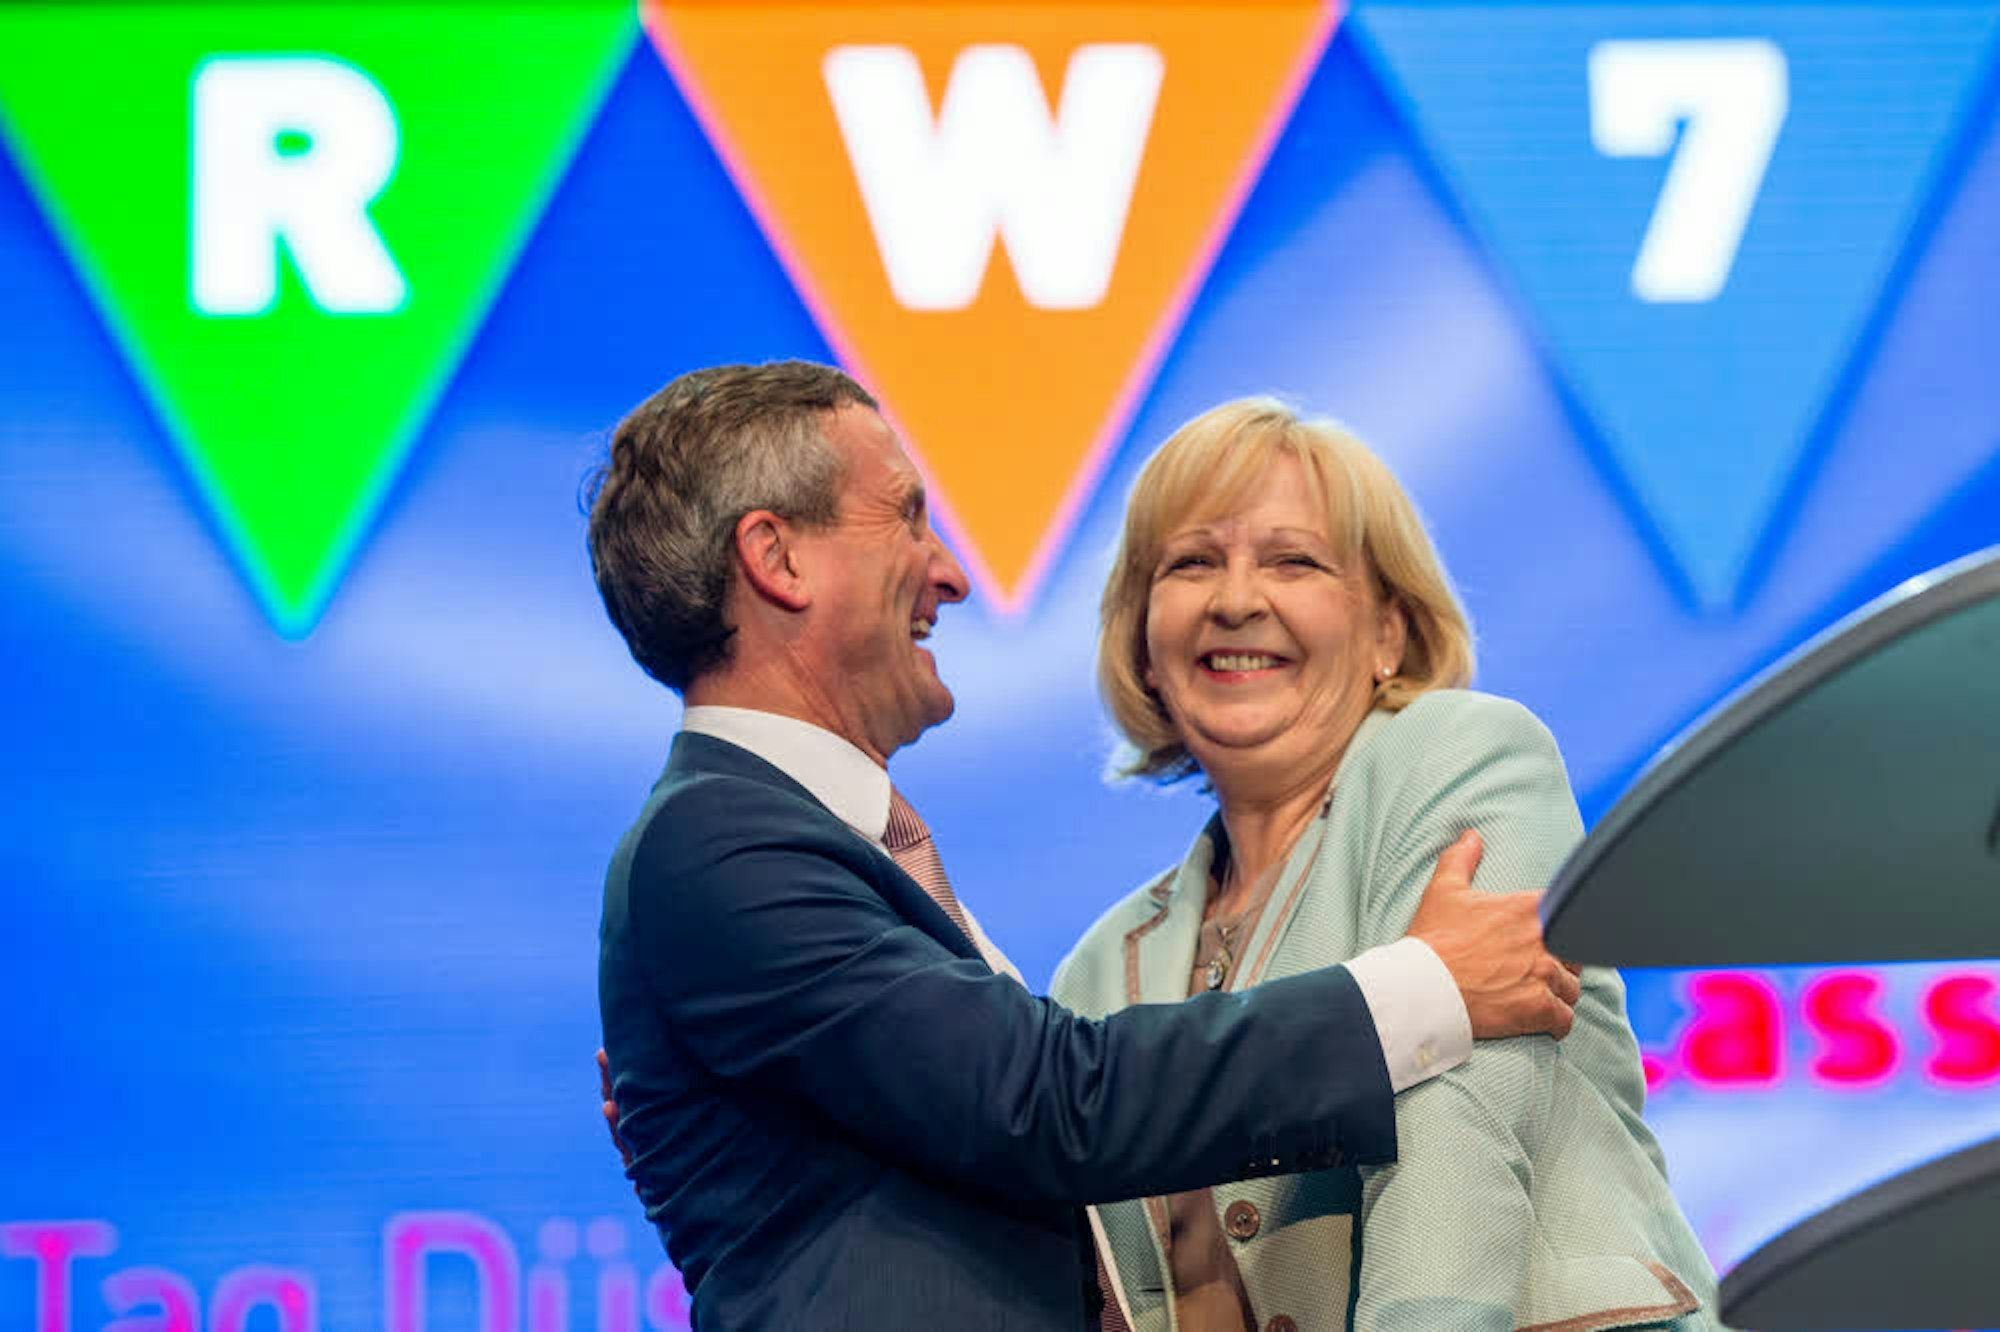 Düsseldorfs OB Thomas Geisel und die damalige Ministerpräsidentin Hannelore Kraft umarmen sich beim NRW-Tag 2016 in Düsseldorf. (Archivfoto)